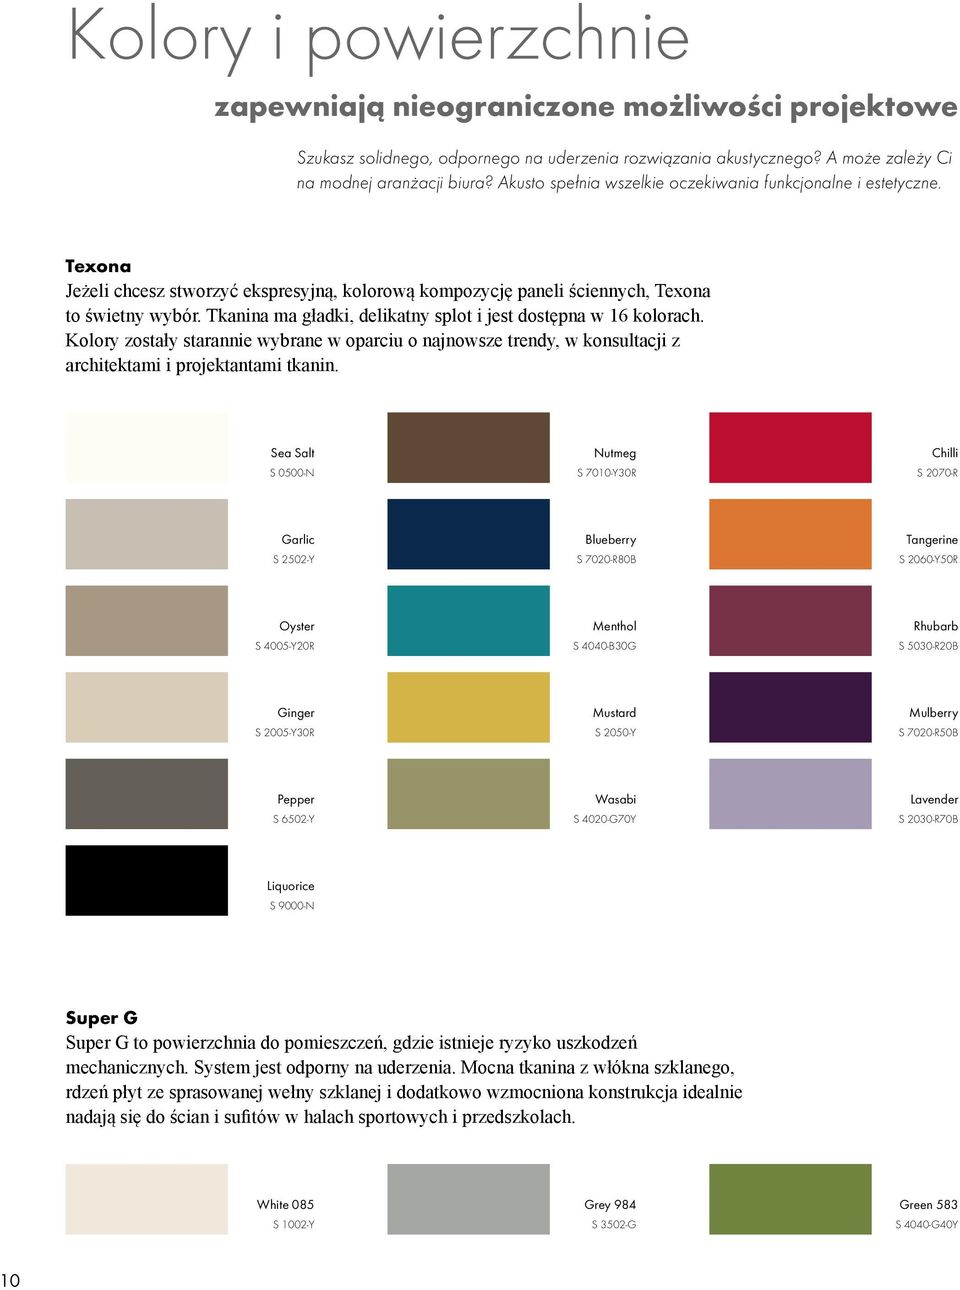 Tkanina ma gładki, delikatny splot i jest dostępna w 16 kolorach. Kolory zostały starannie wybrane w oparciu o najnowsze trendy, w konsultacji z architektami i projektantami tkanin.